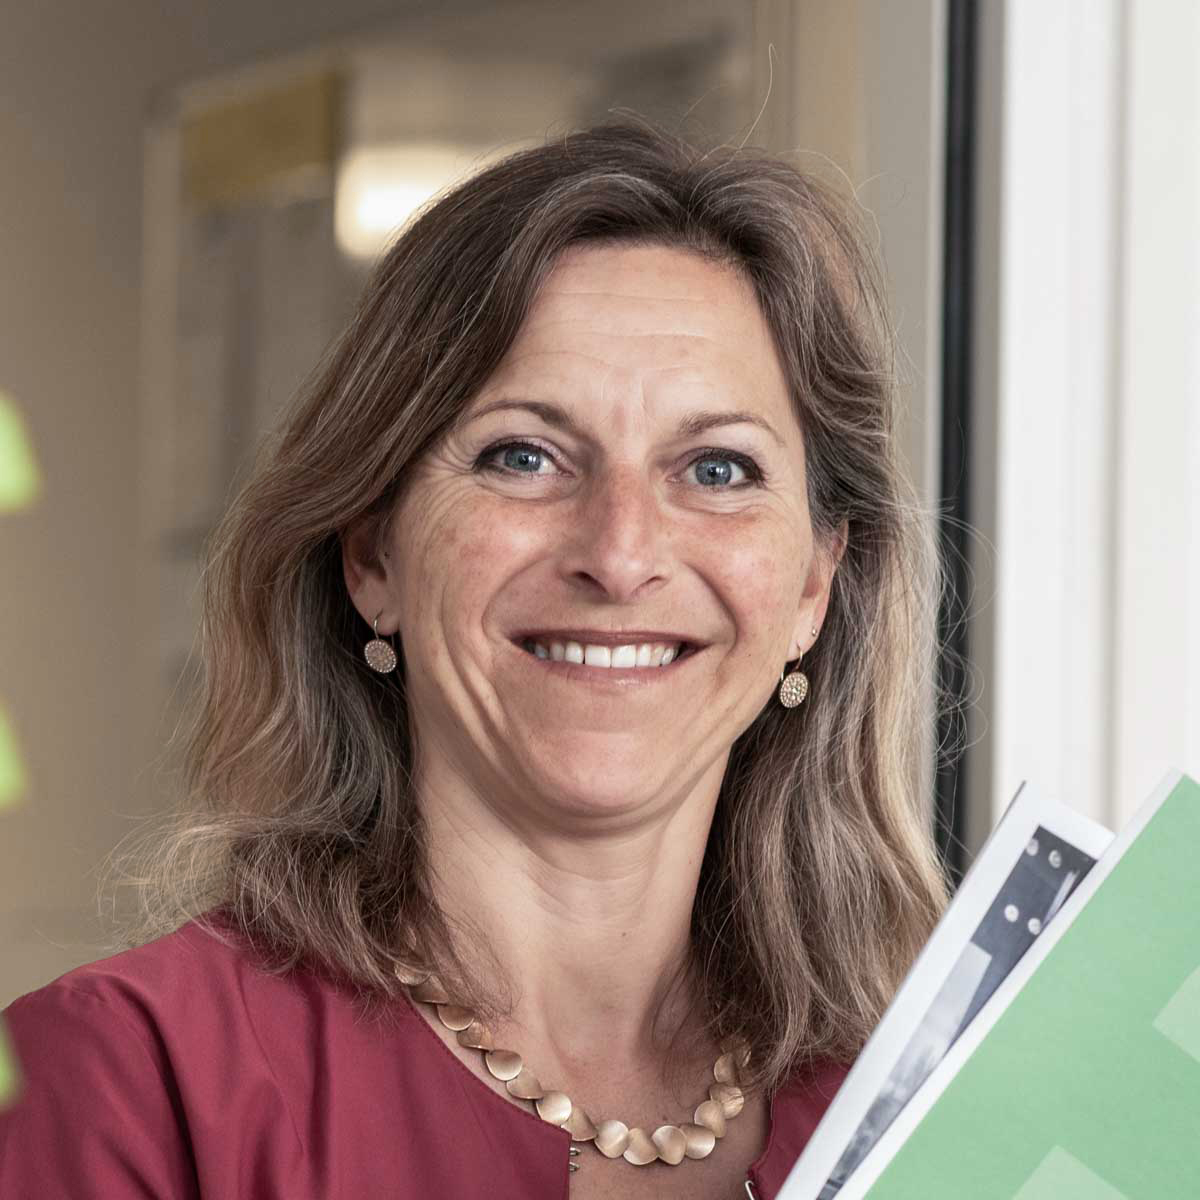 Patricia Hochstrasser, Administratorin am FAU-Standort Luzern